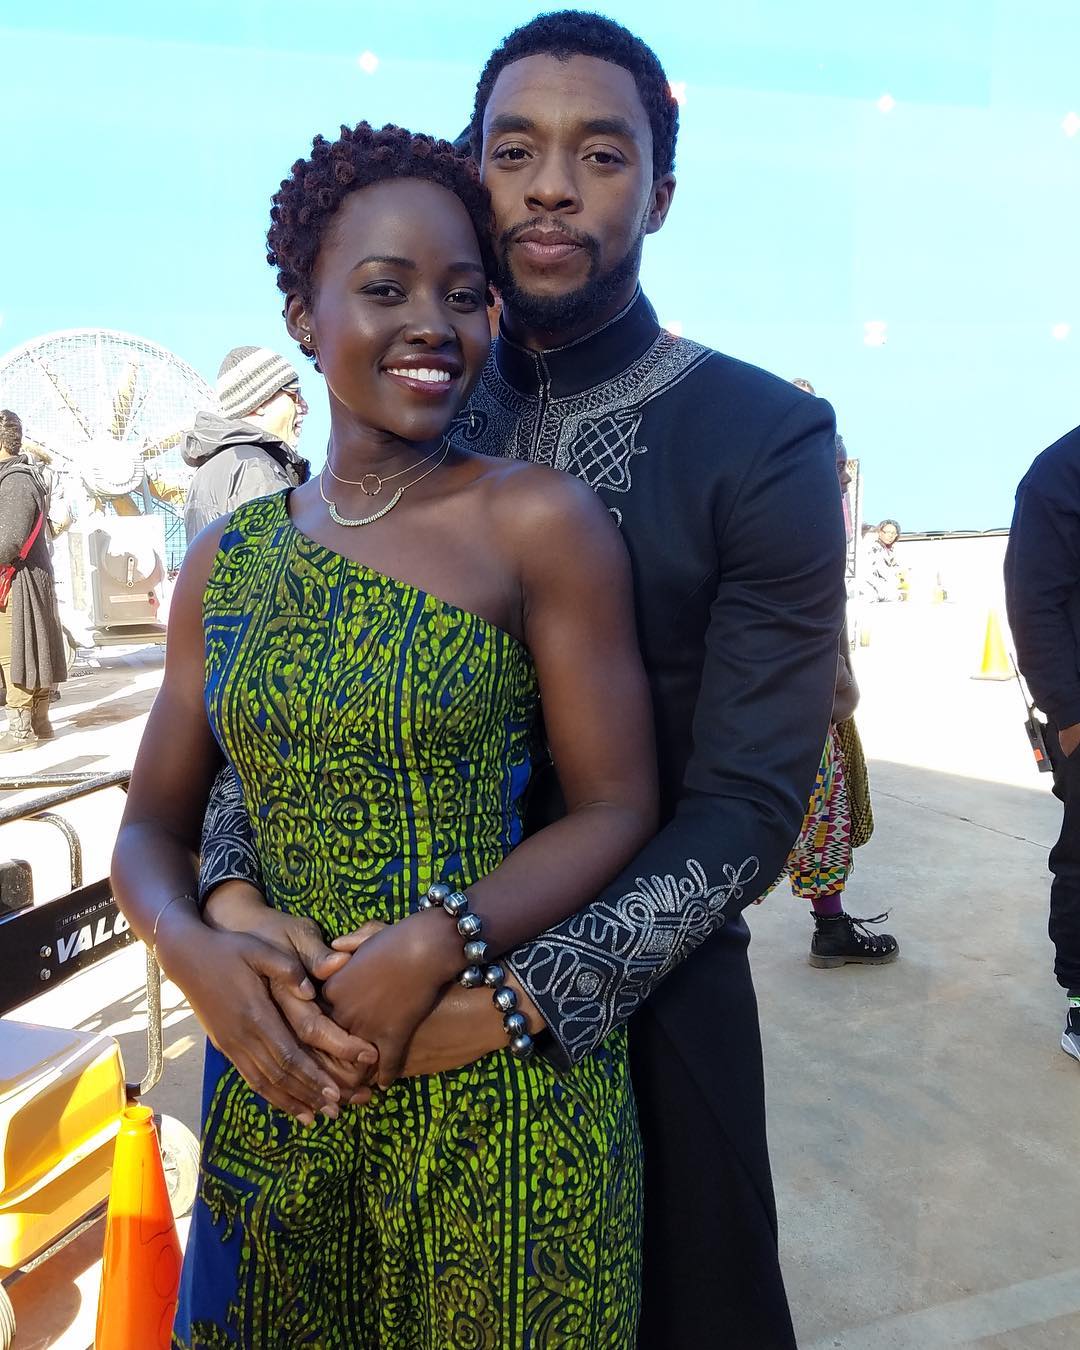 2018-04-07-Lupita Nyongo: Snuggled By Chadwick Boseman On Prom Date